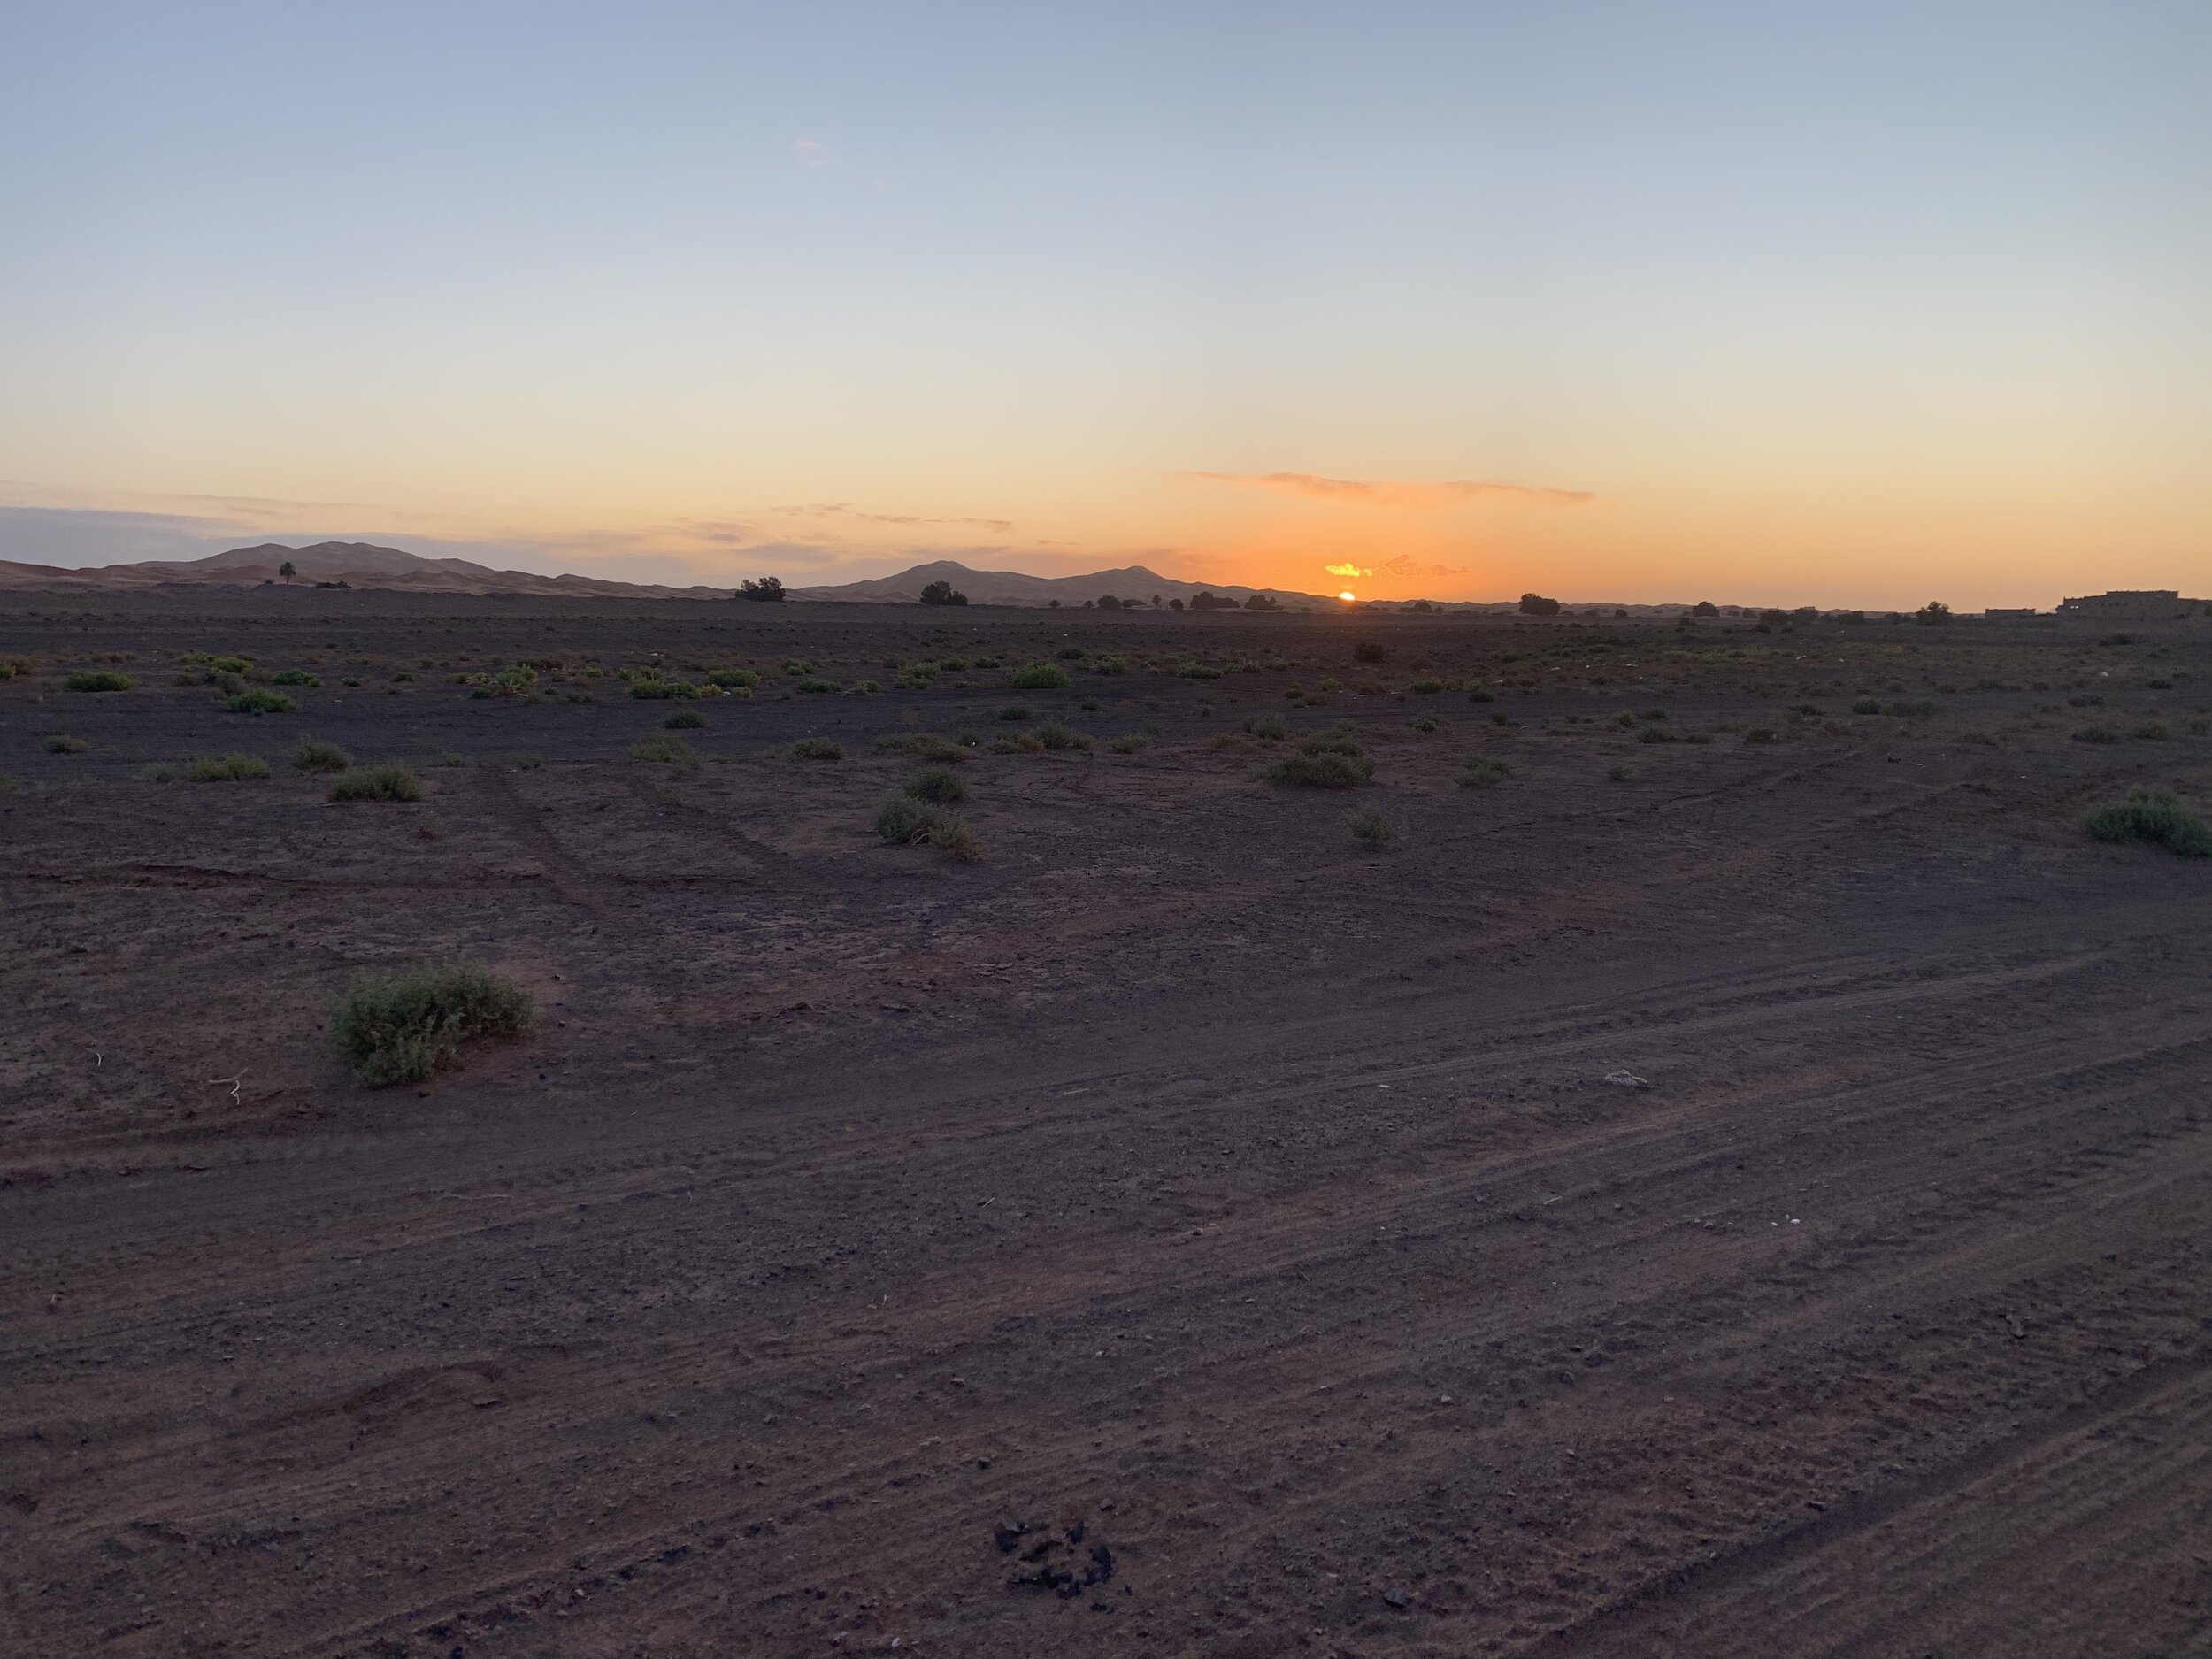 Desert sunrise over Merzouga.